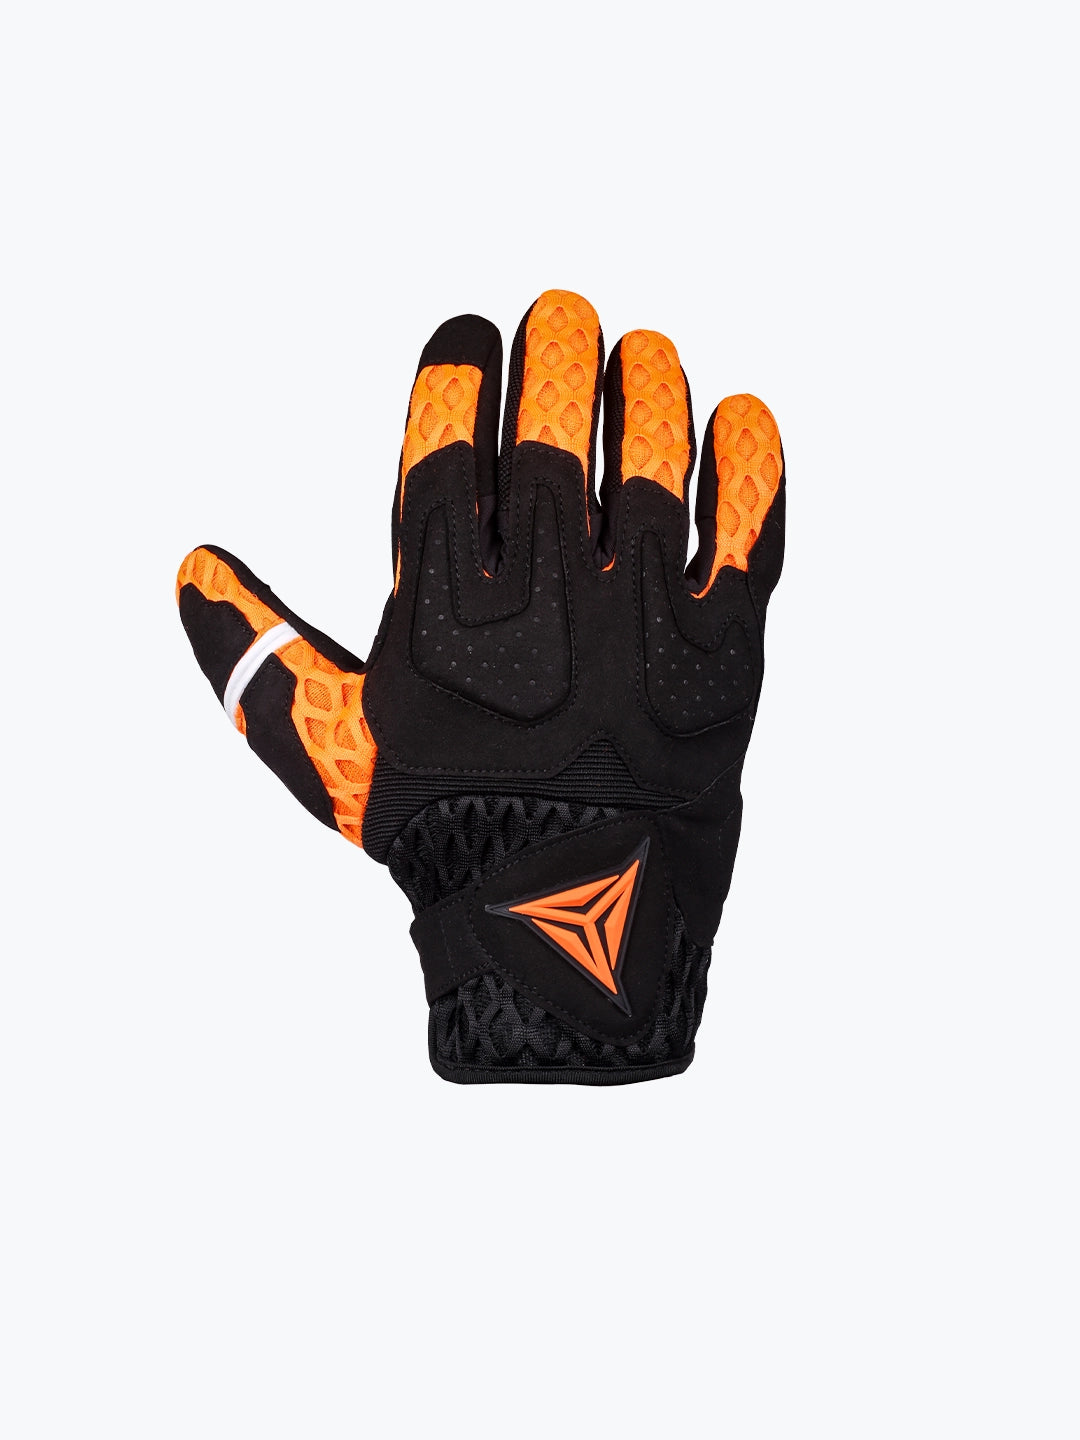 Motowolf Gloves Orange 0339